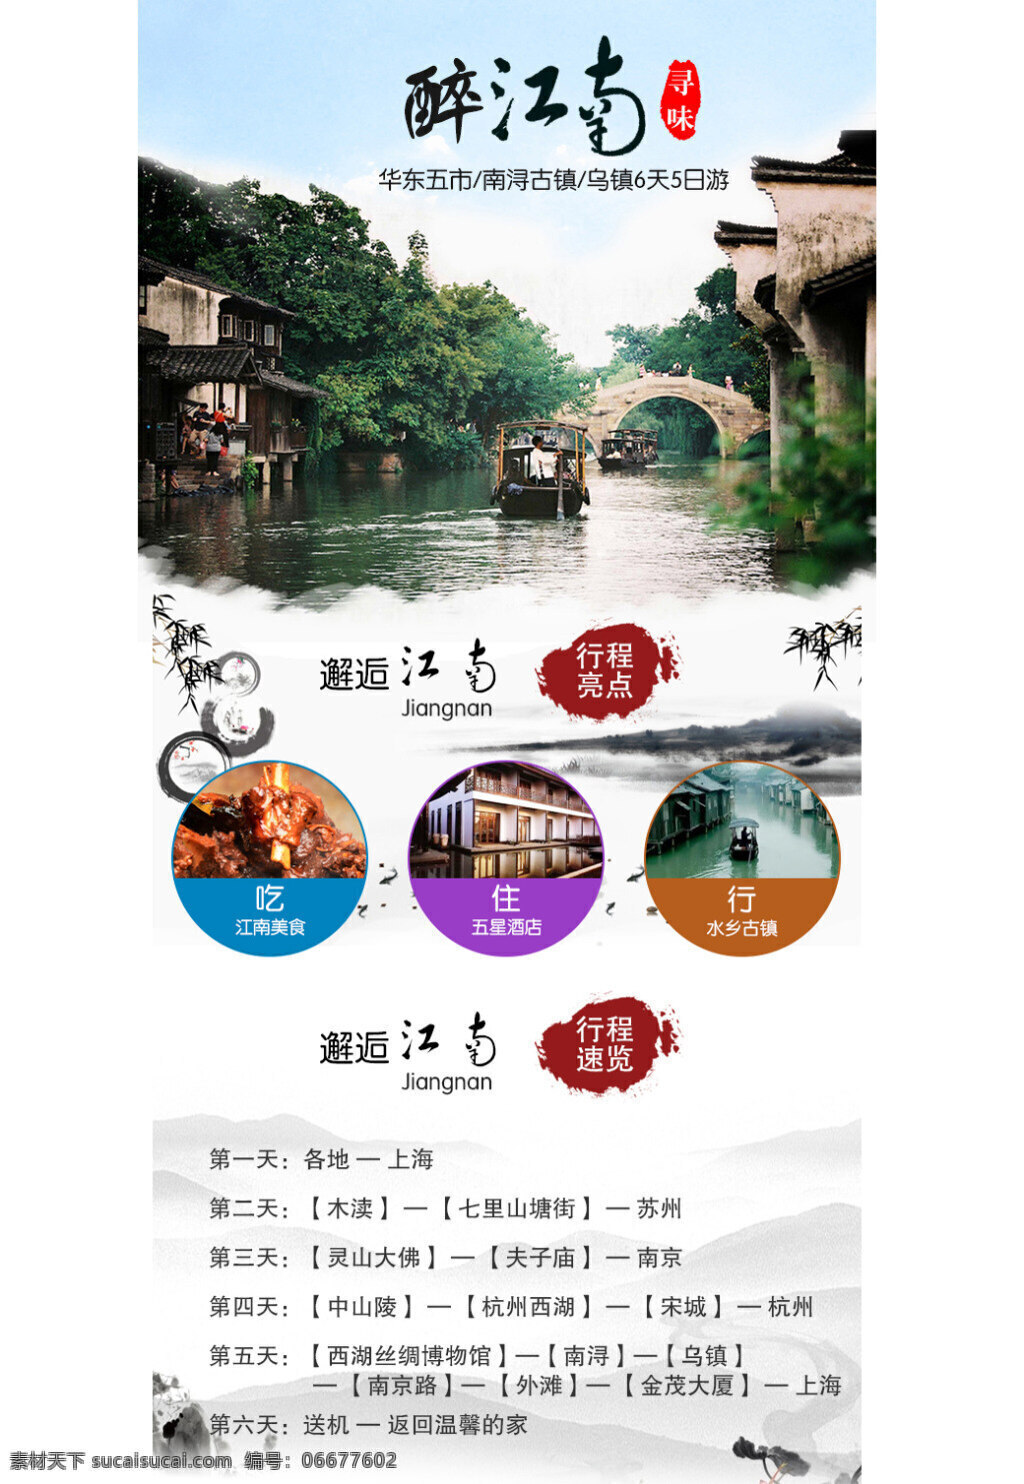 江南 旅游 详情 页 江南旅游模板 华东五市旅游 旅游设计 淘宝旅游设计 白色